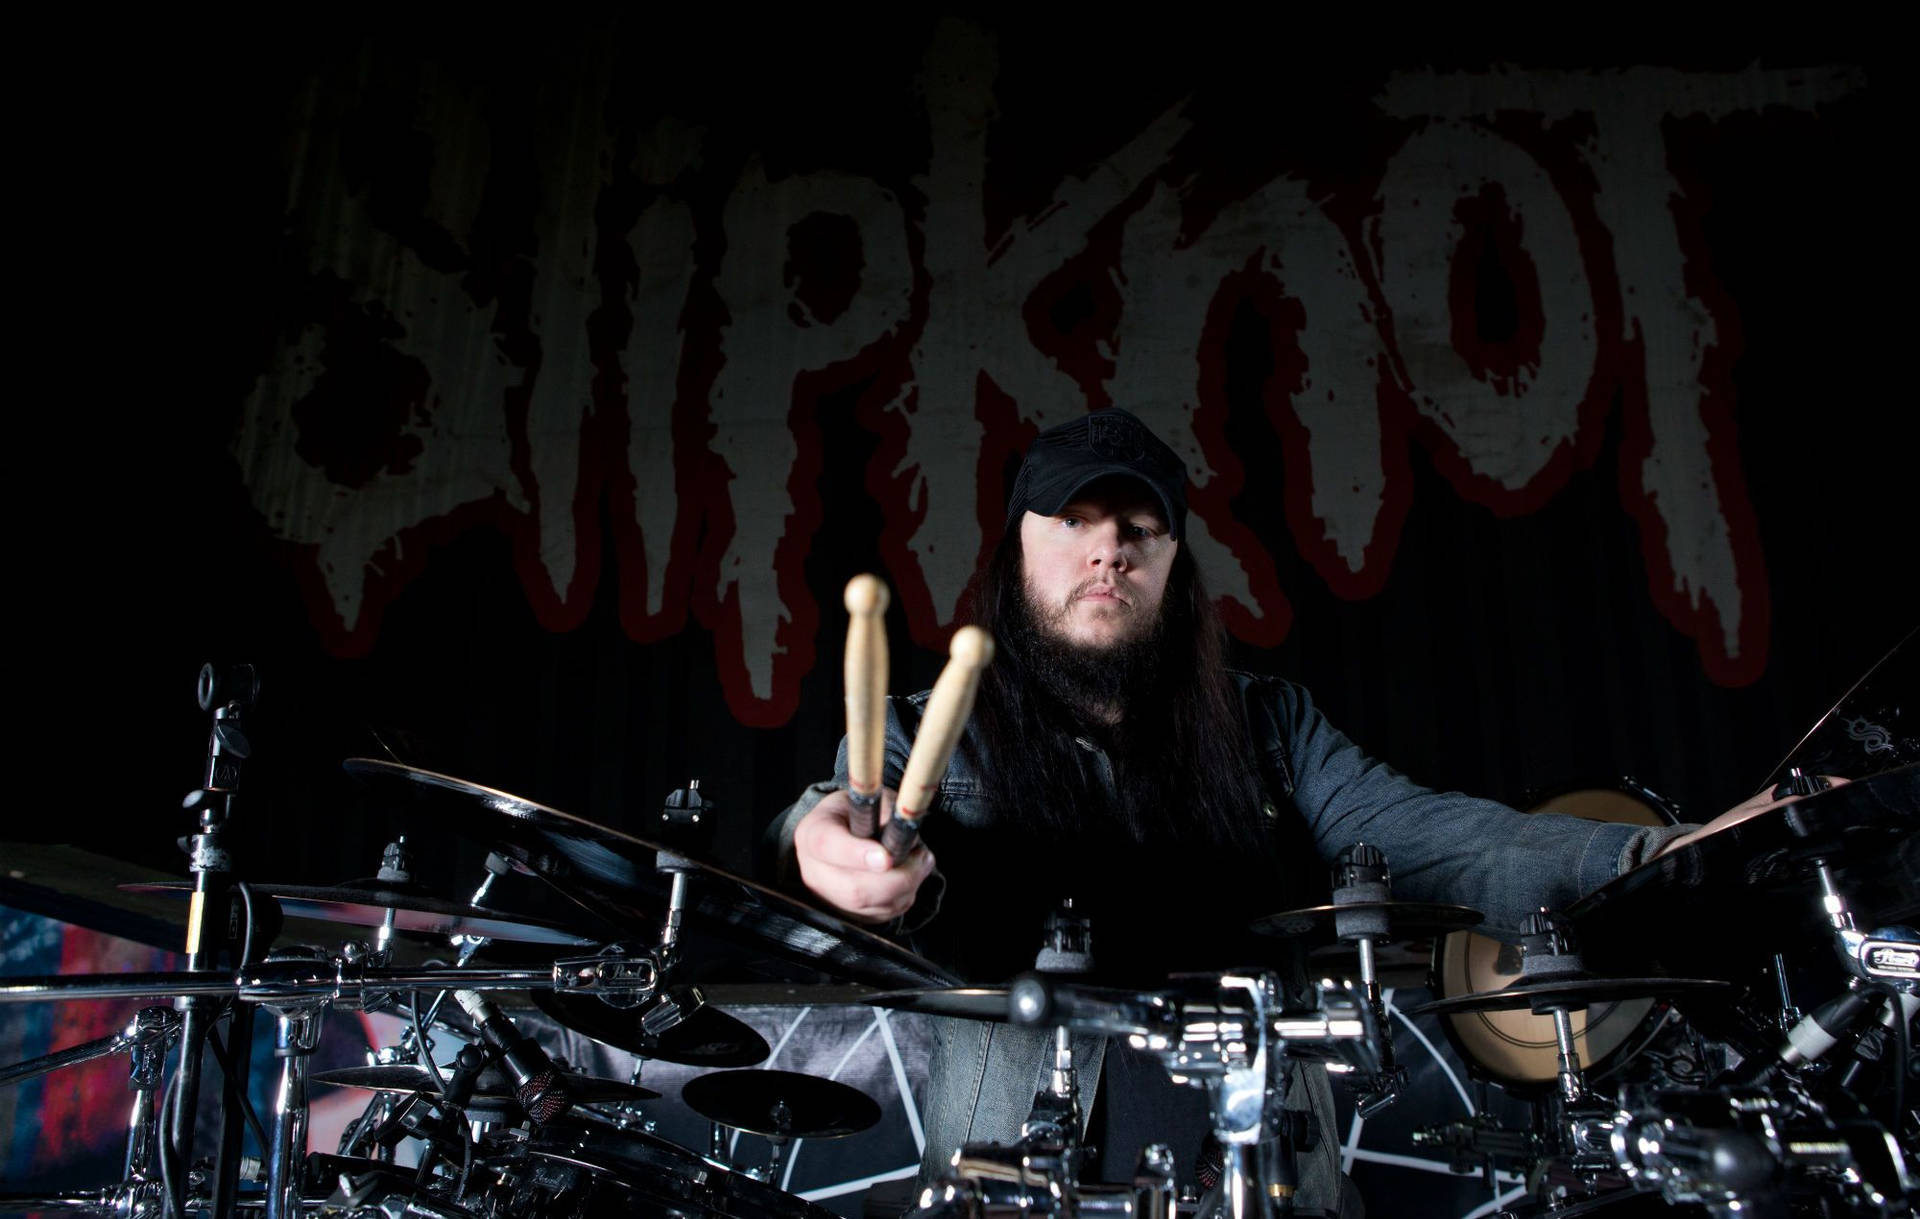 Joey Jordison Slipknot Drummer Wallpaper